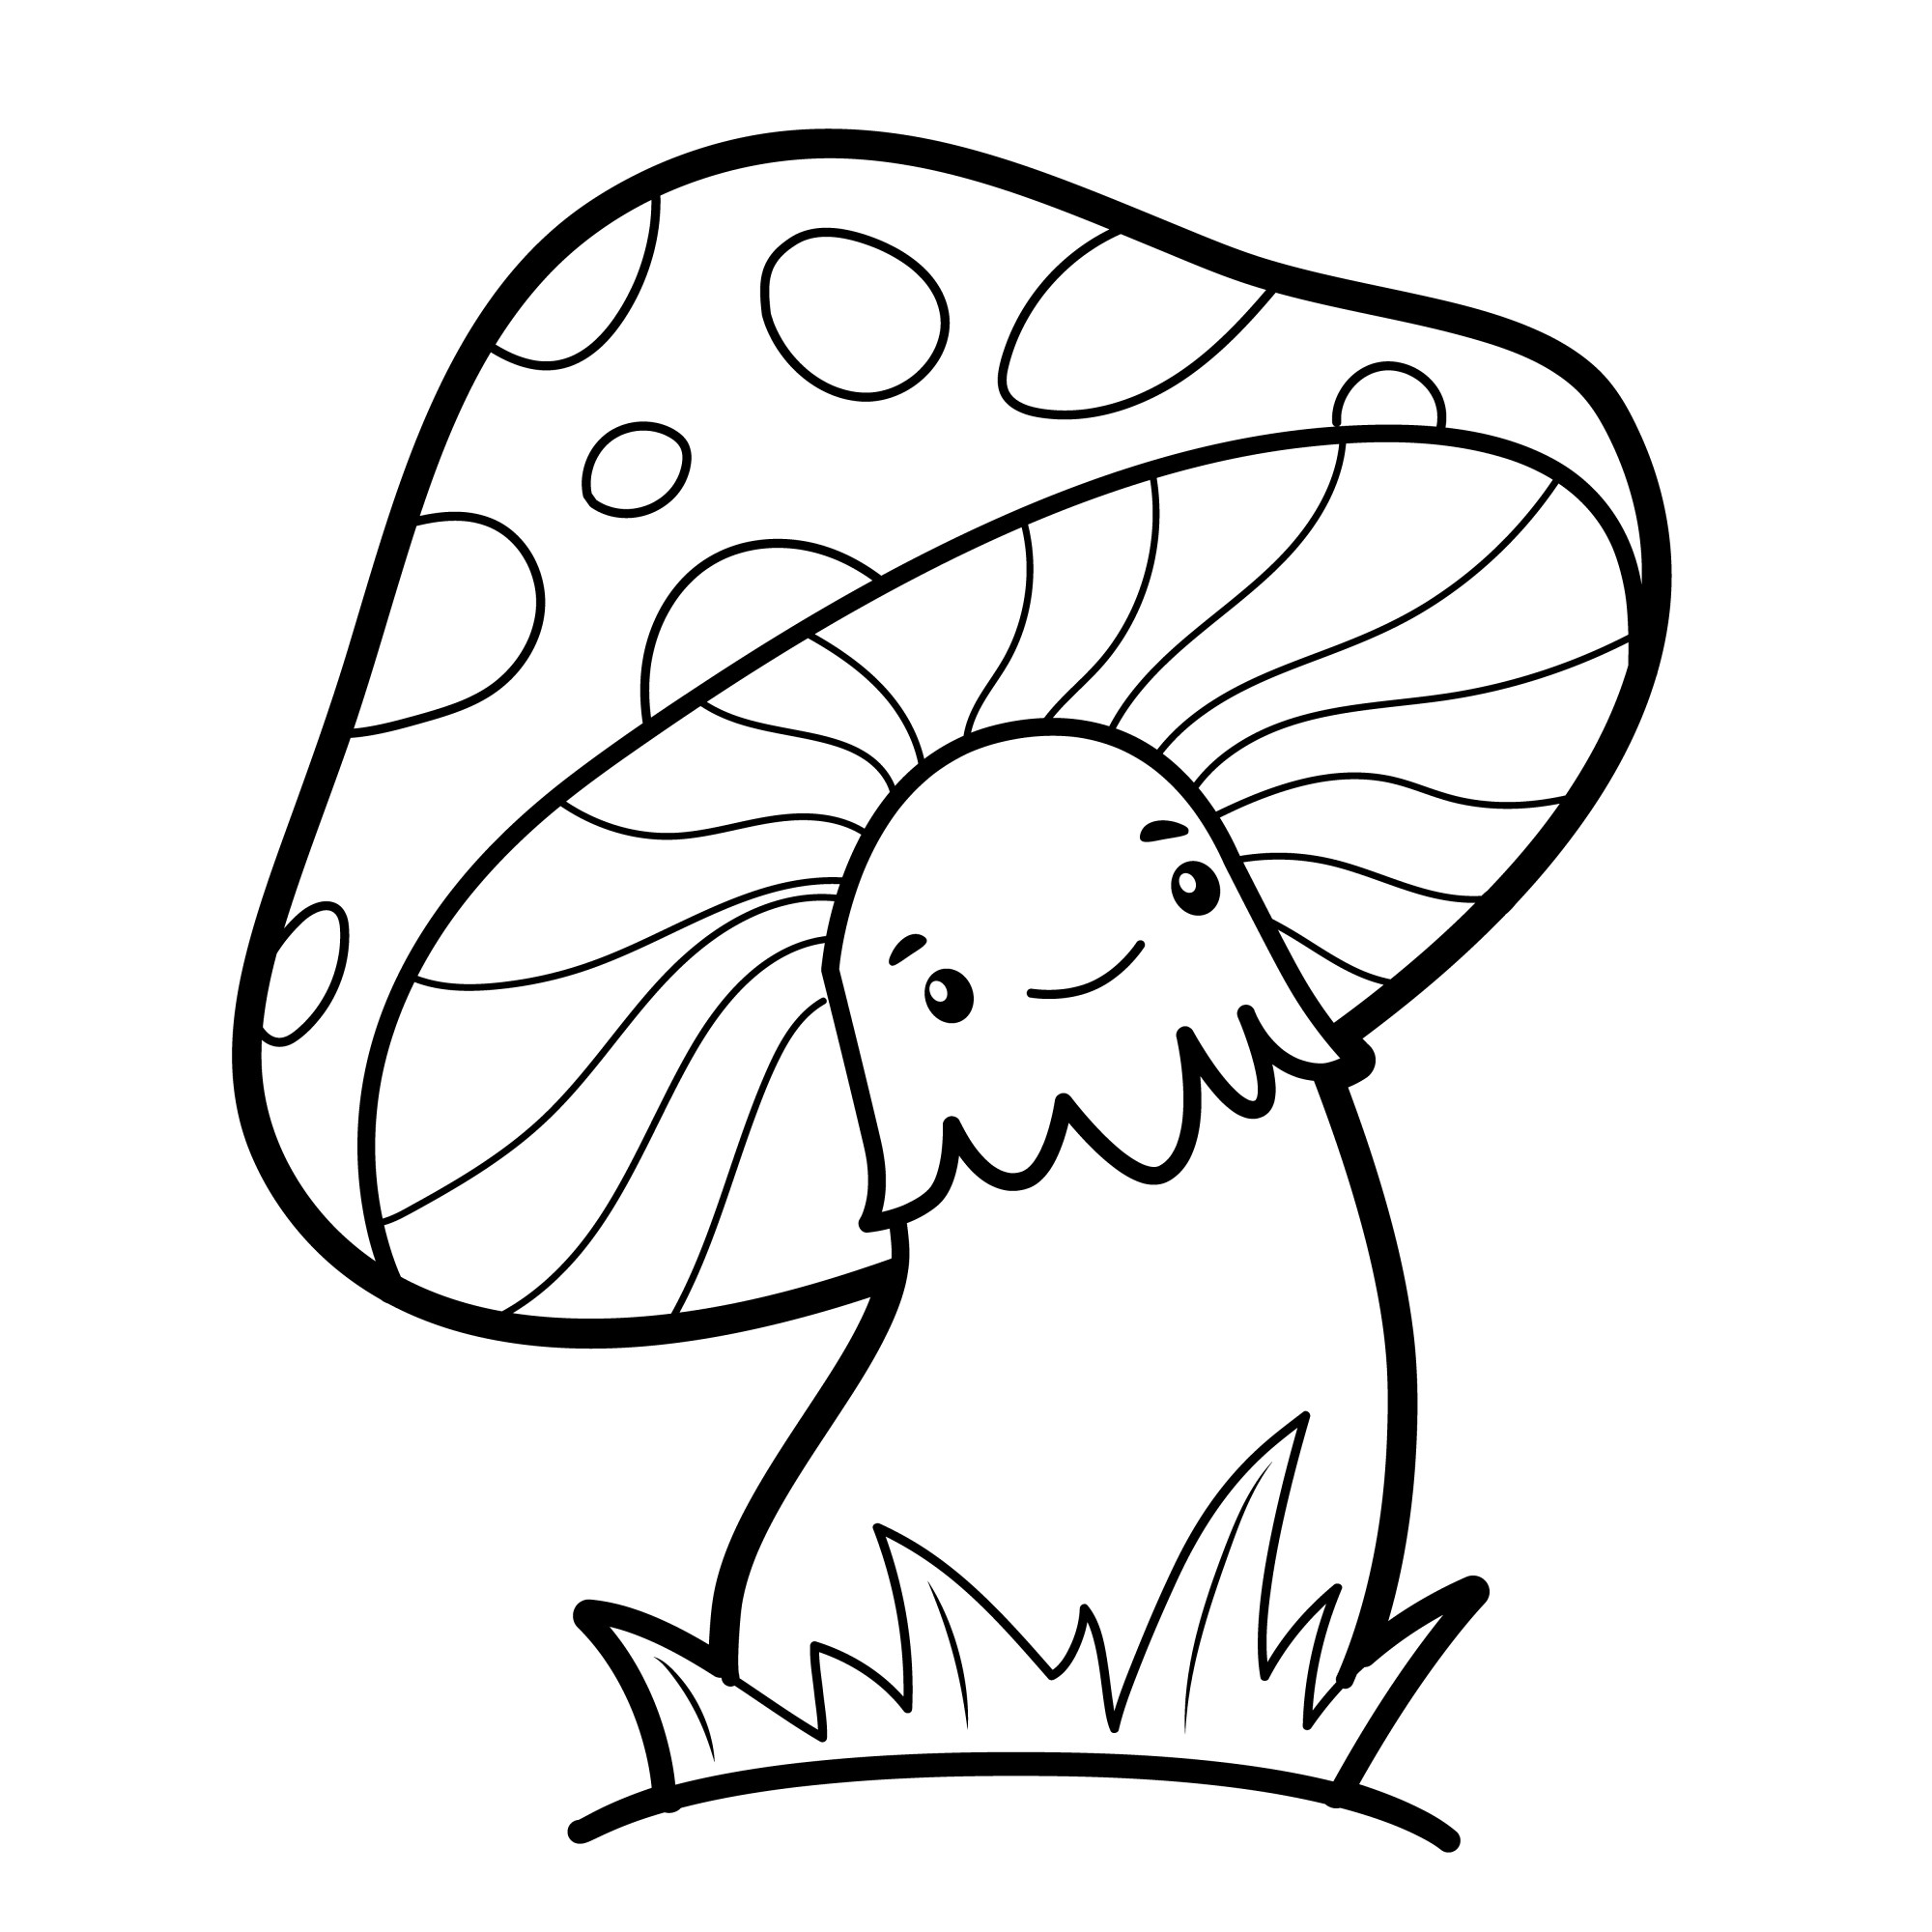 Раскраска для детей: сказочный гриб с веселой мордочкой